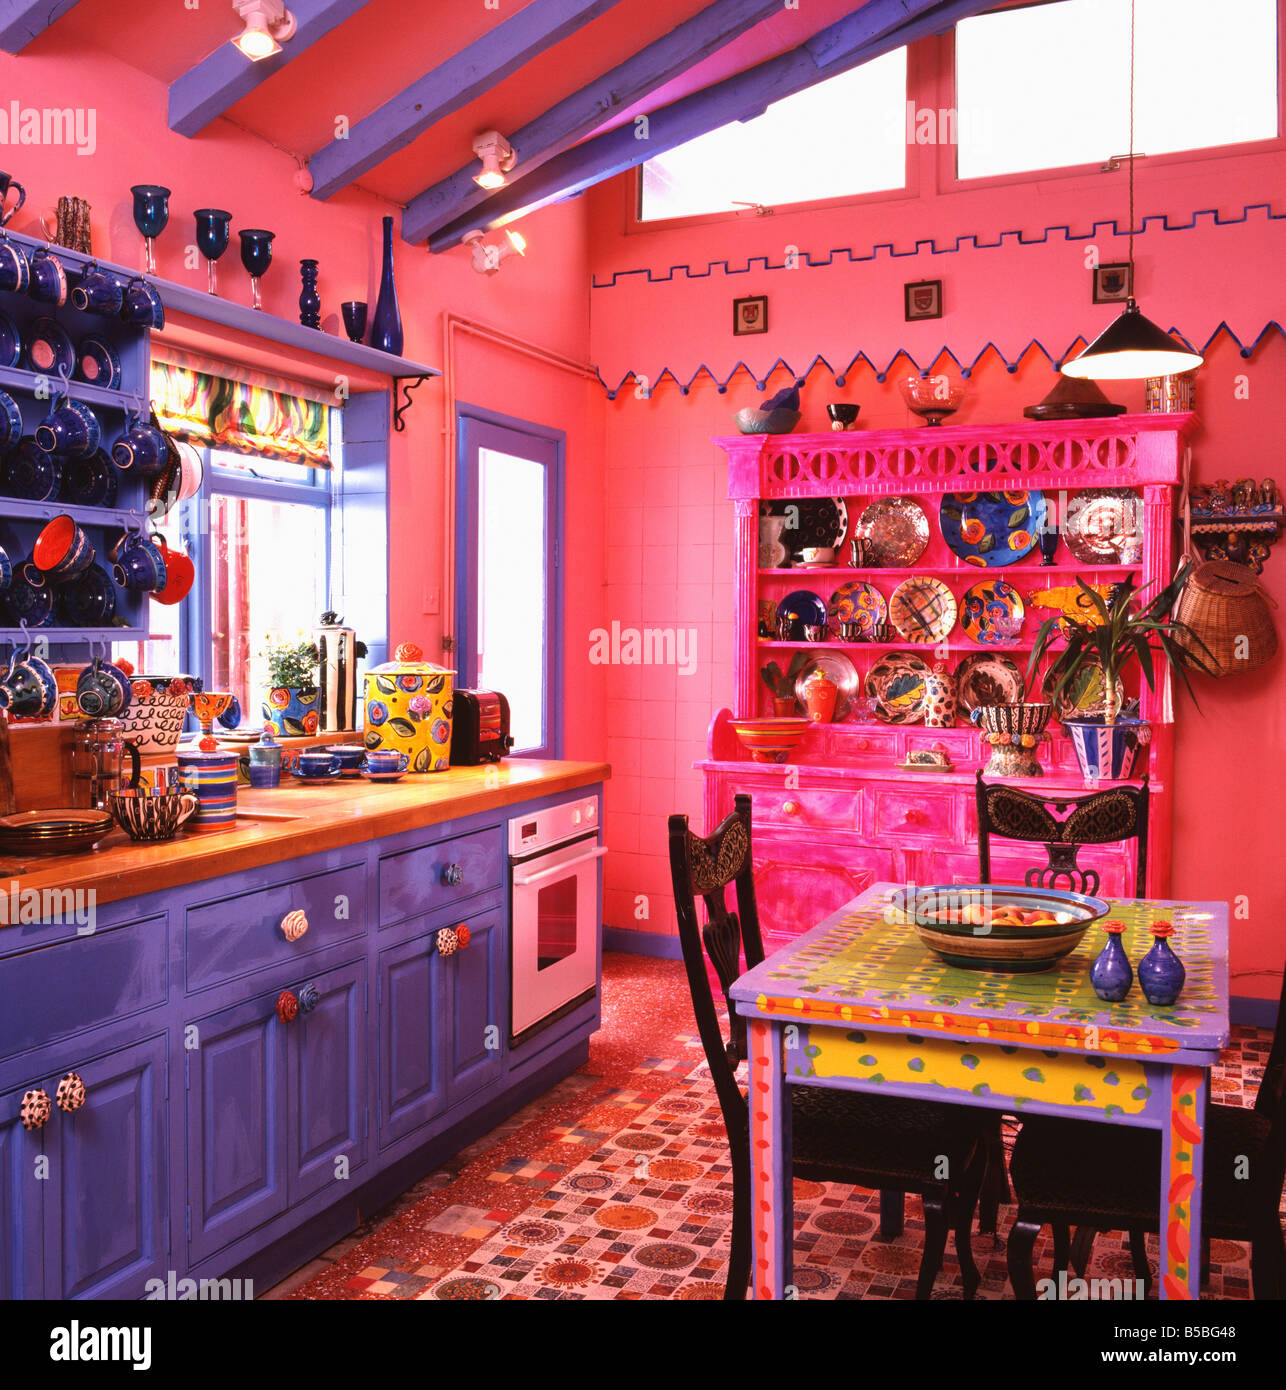 Bunt bemalten bunten Tisch in hell rosa Küche mit pulsierenden blau und  rosa Kommode und mehrfarbige Böden Stockfotografie - Alamy